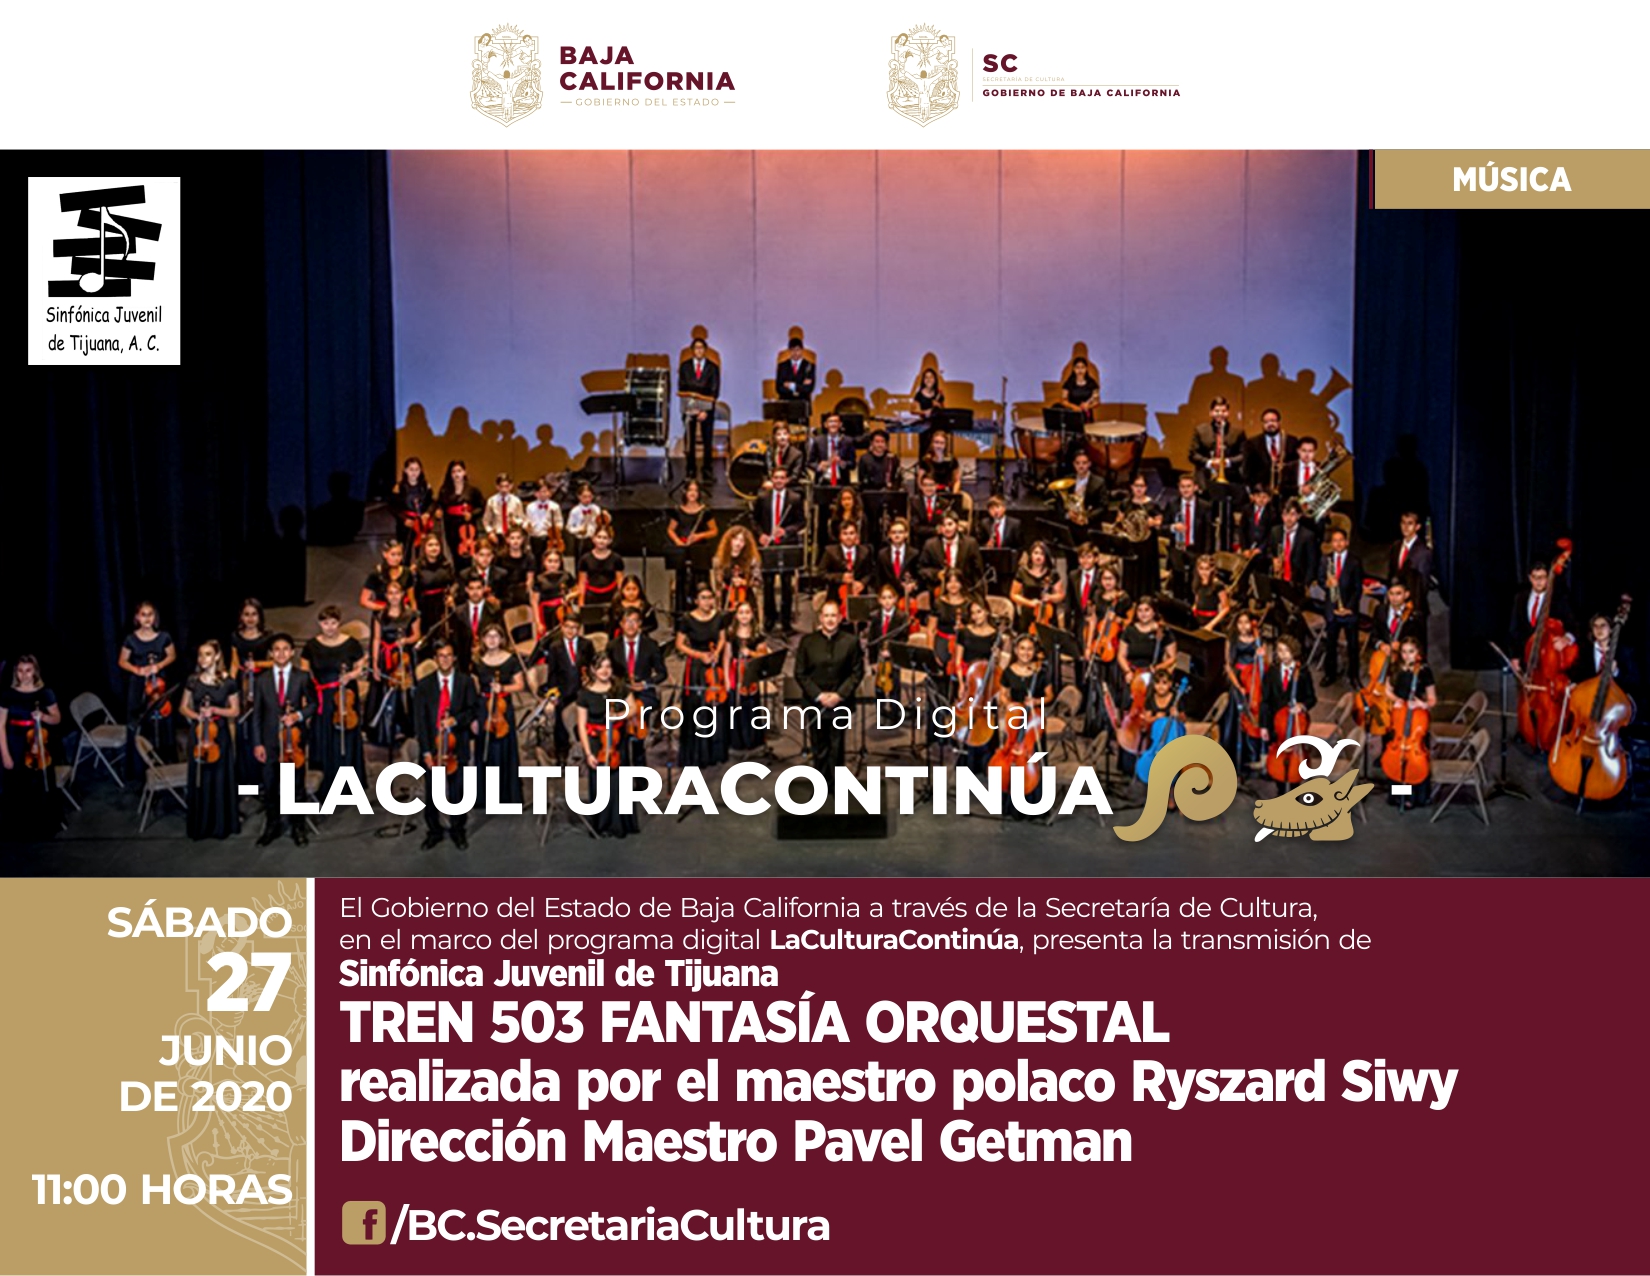 La Sinfónica Juvenil de Tijuana ofrecerá una serie de conciertos en el programa digital la Cultura Continúa